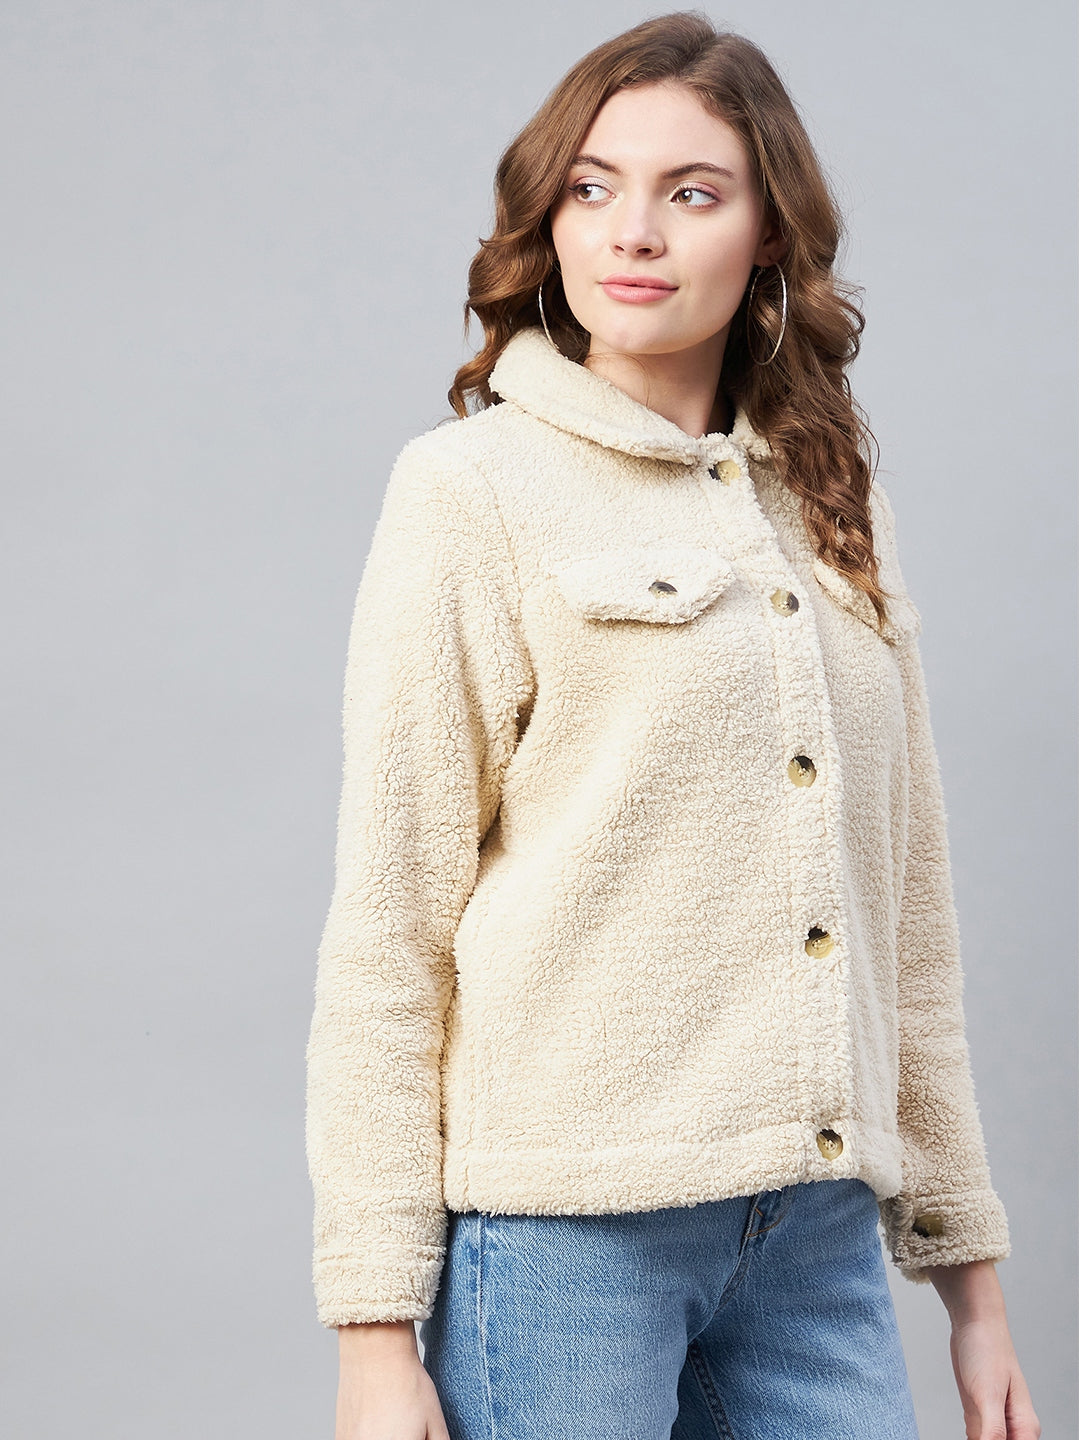 StyleStone Women's Cream Fleece Casual Winter Jacket